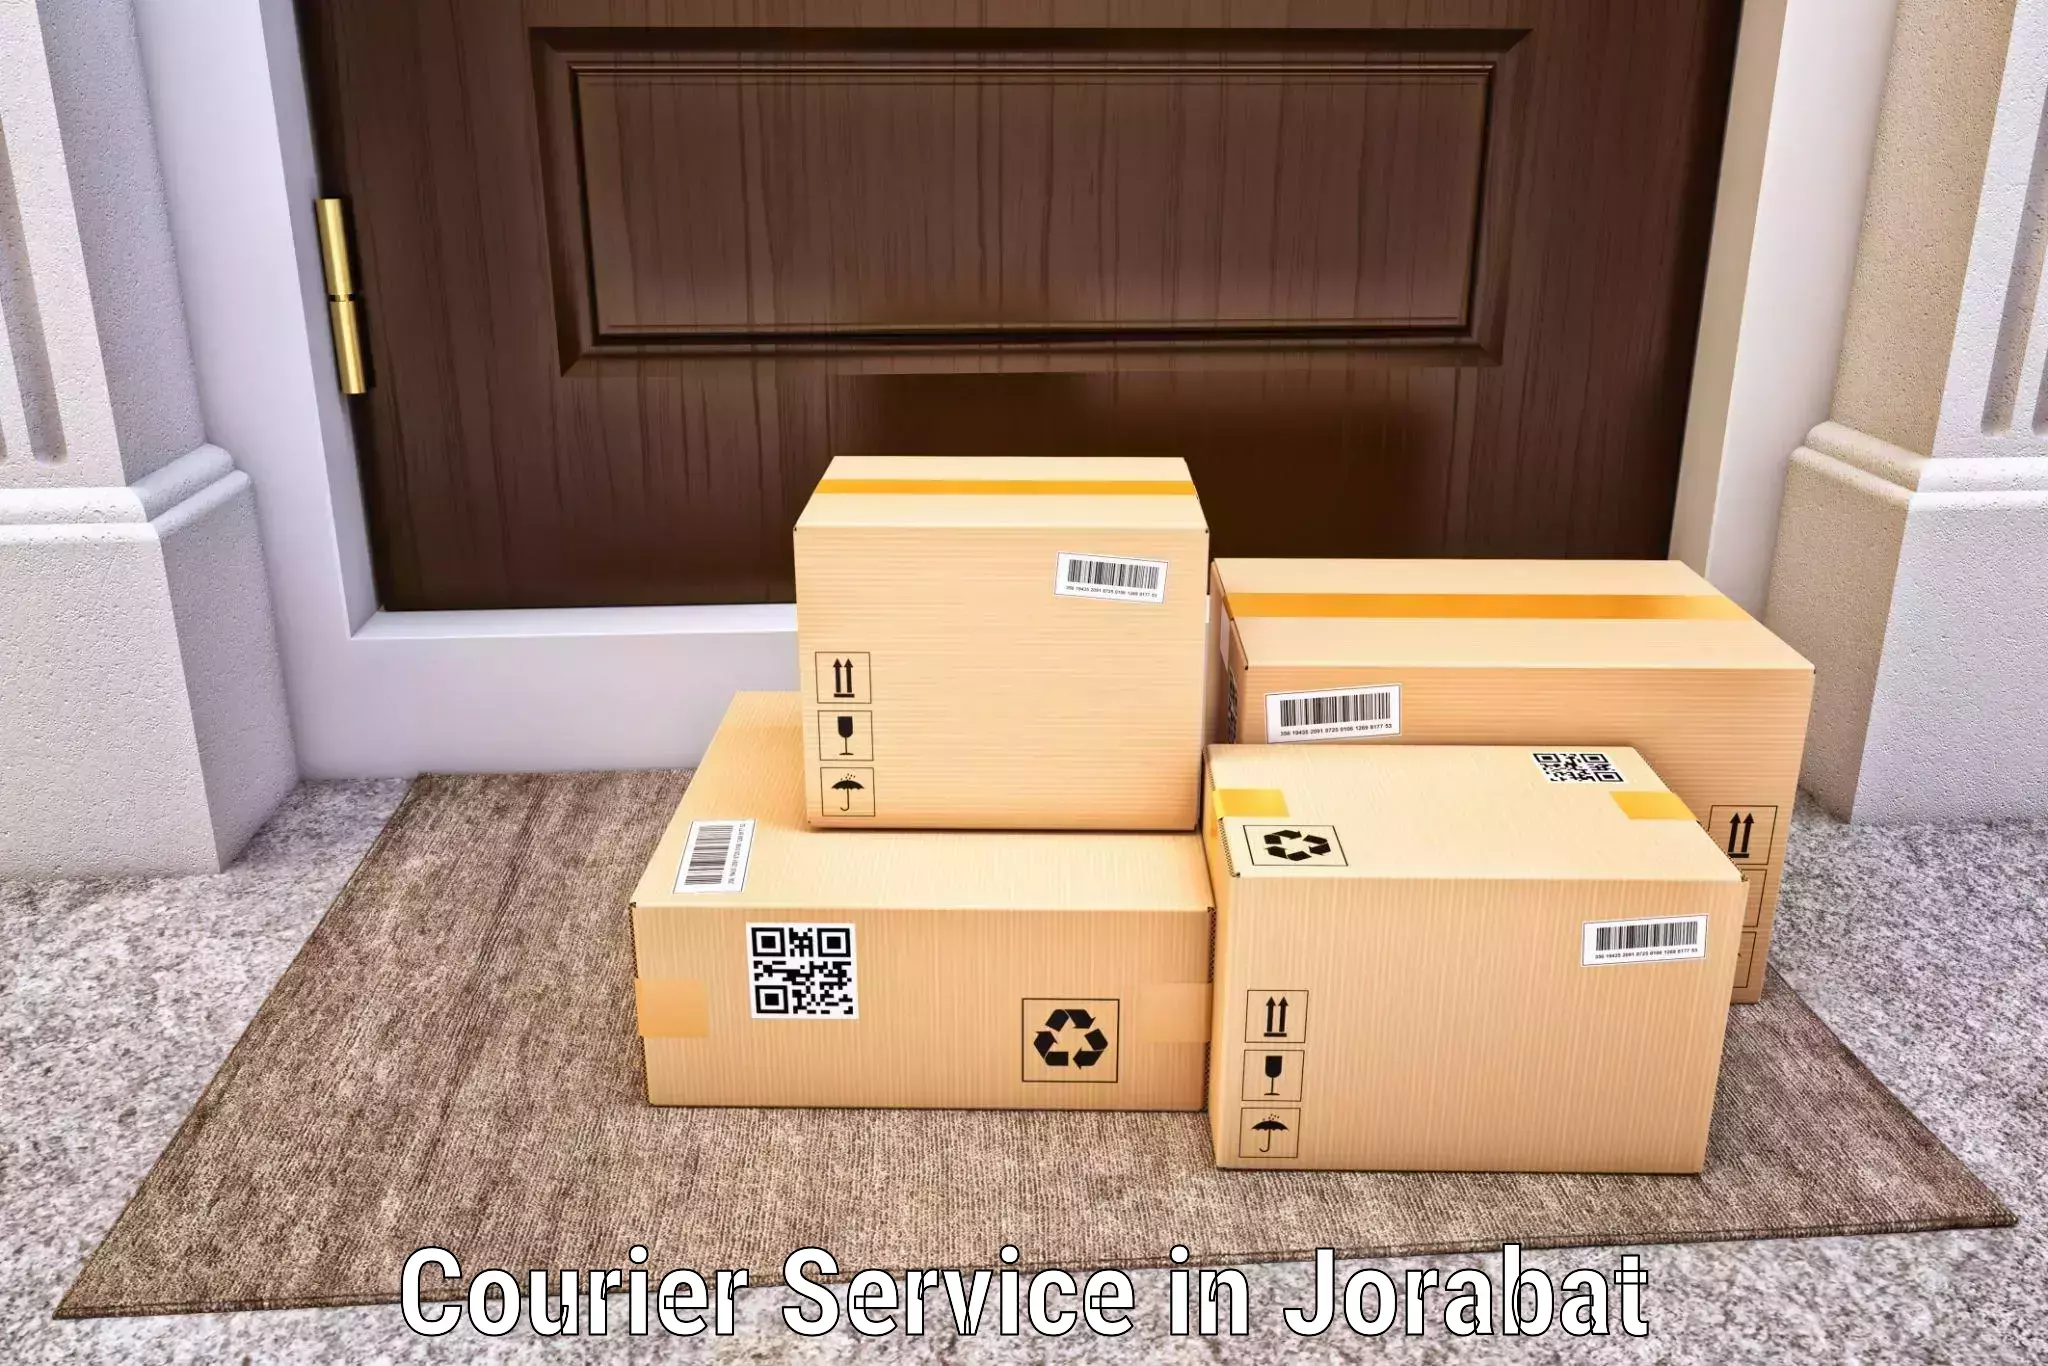 Corporate courier solutions in Jorabat